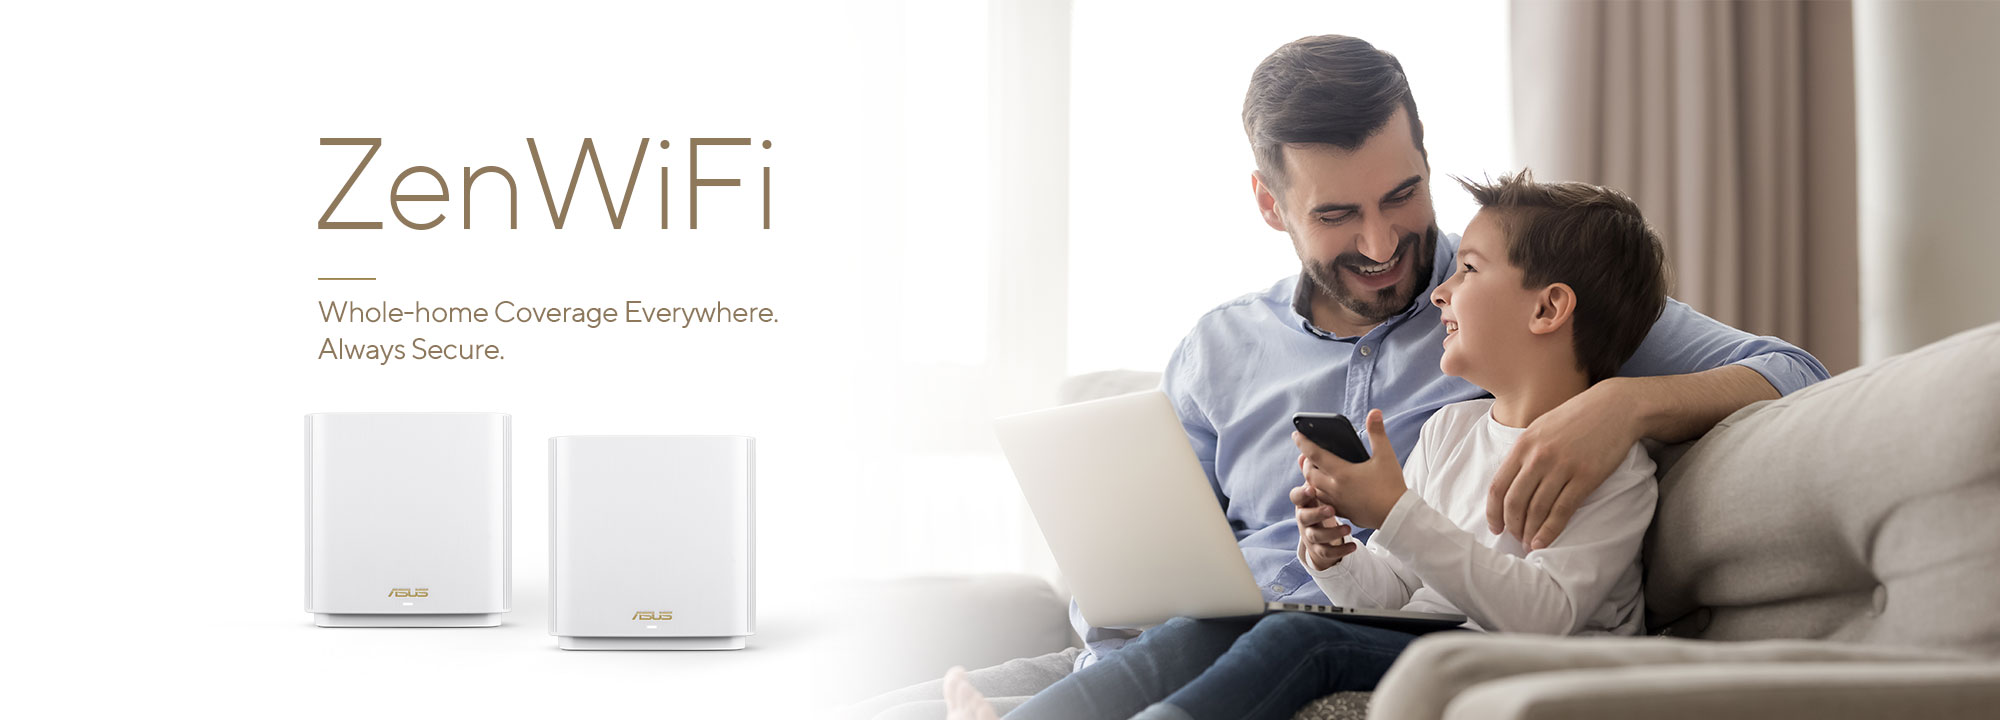 ASUS ZenWiFi est le meilleur système WiFi maillé pour couvrir la maison, offrant une connexion stable et rapide à tous vos appareils.